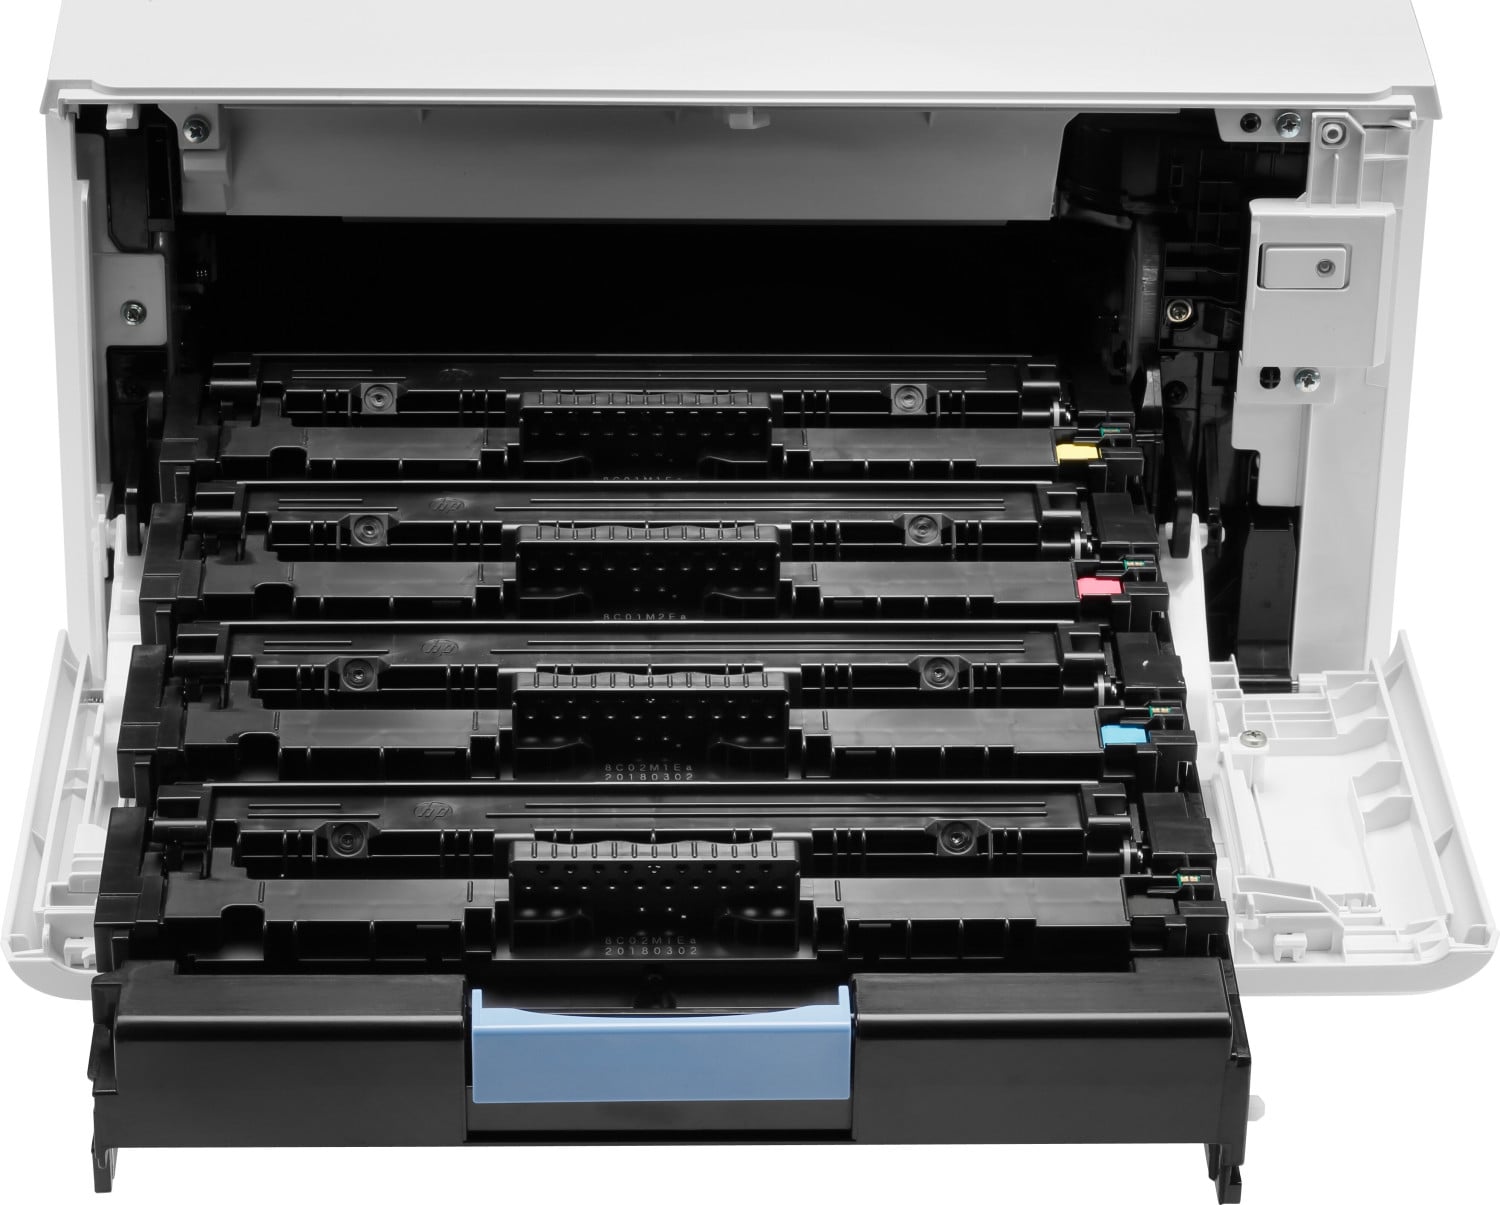 HP Multifunktionsdrucker Laser Farbe Laserjet Pro MFP M479dw